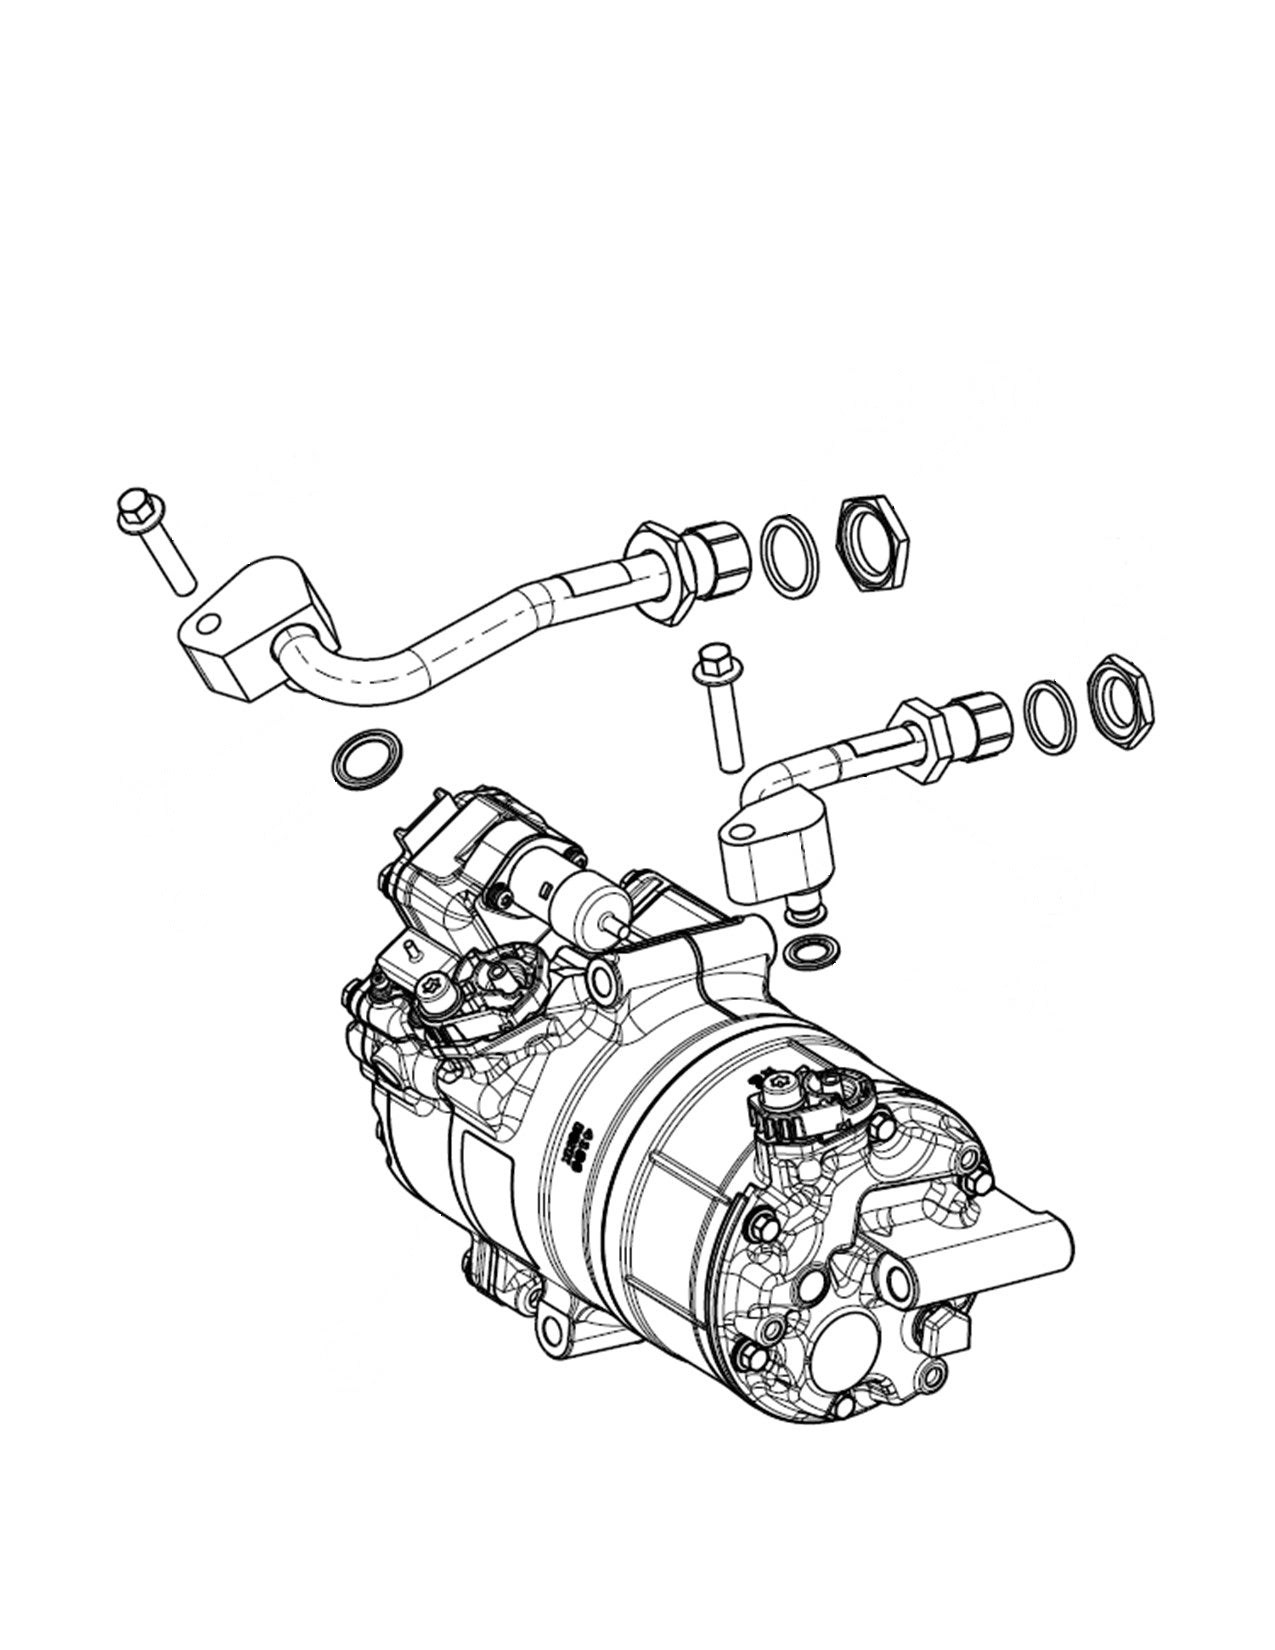 Sanden Shs33 High Voltage Ac Compressor Kit For Electrified Vehicles Rd-2-8358-0P Compressors